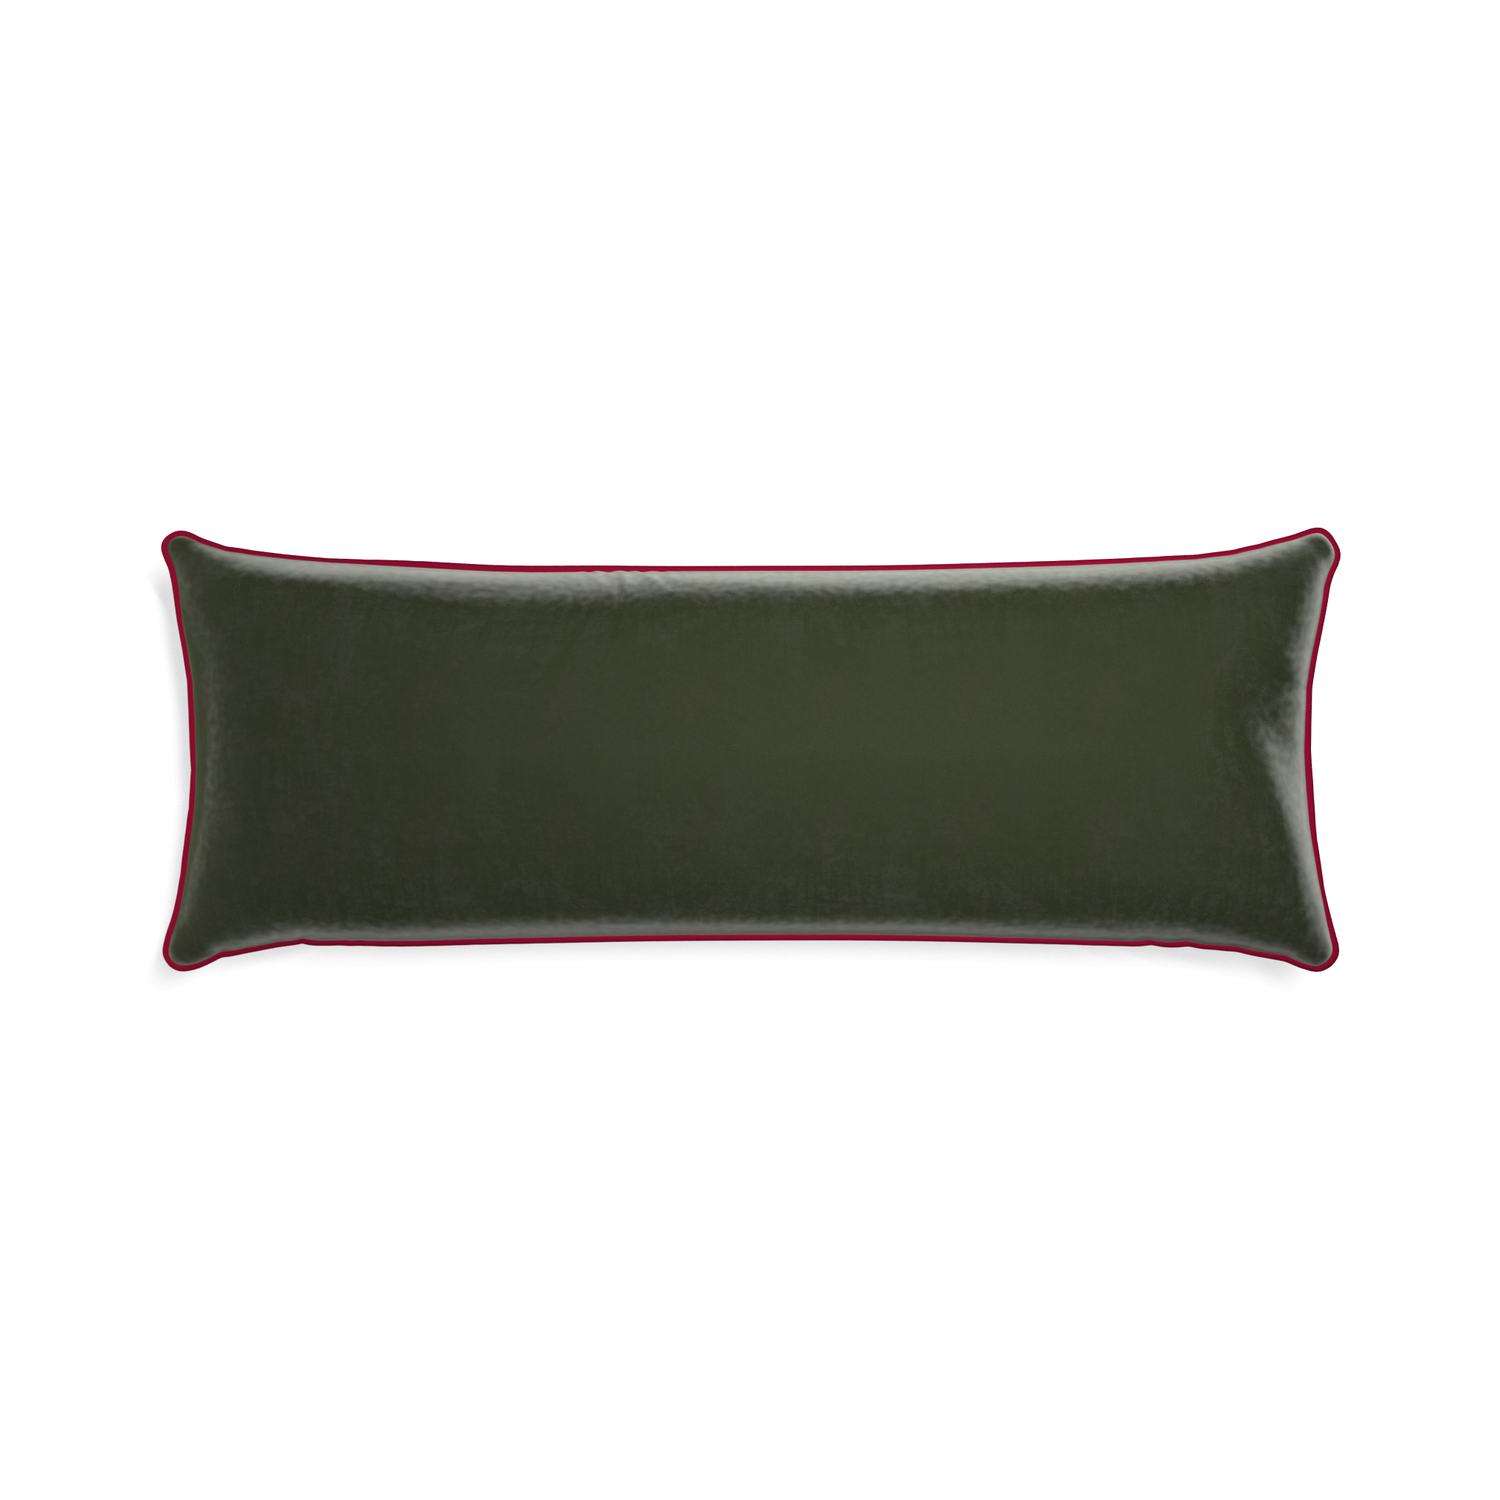 Xl-lumbar fern velvet custom pillow with raspberry piping on white background